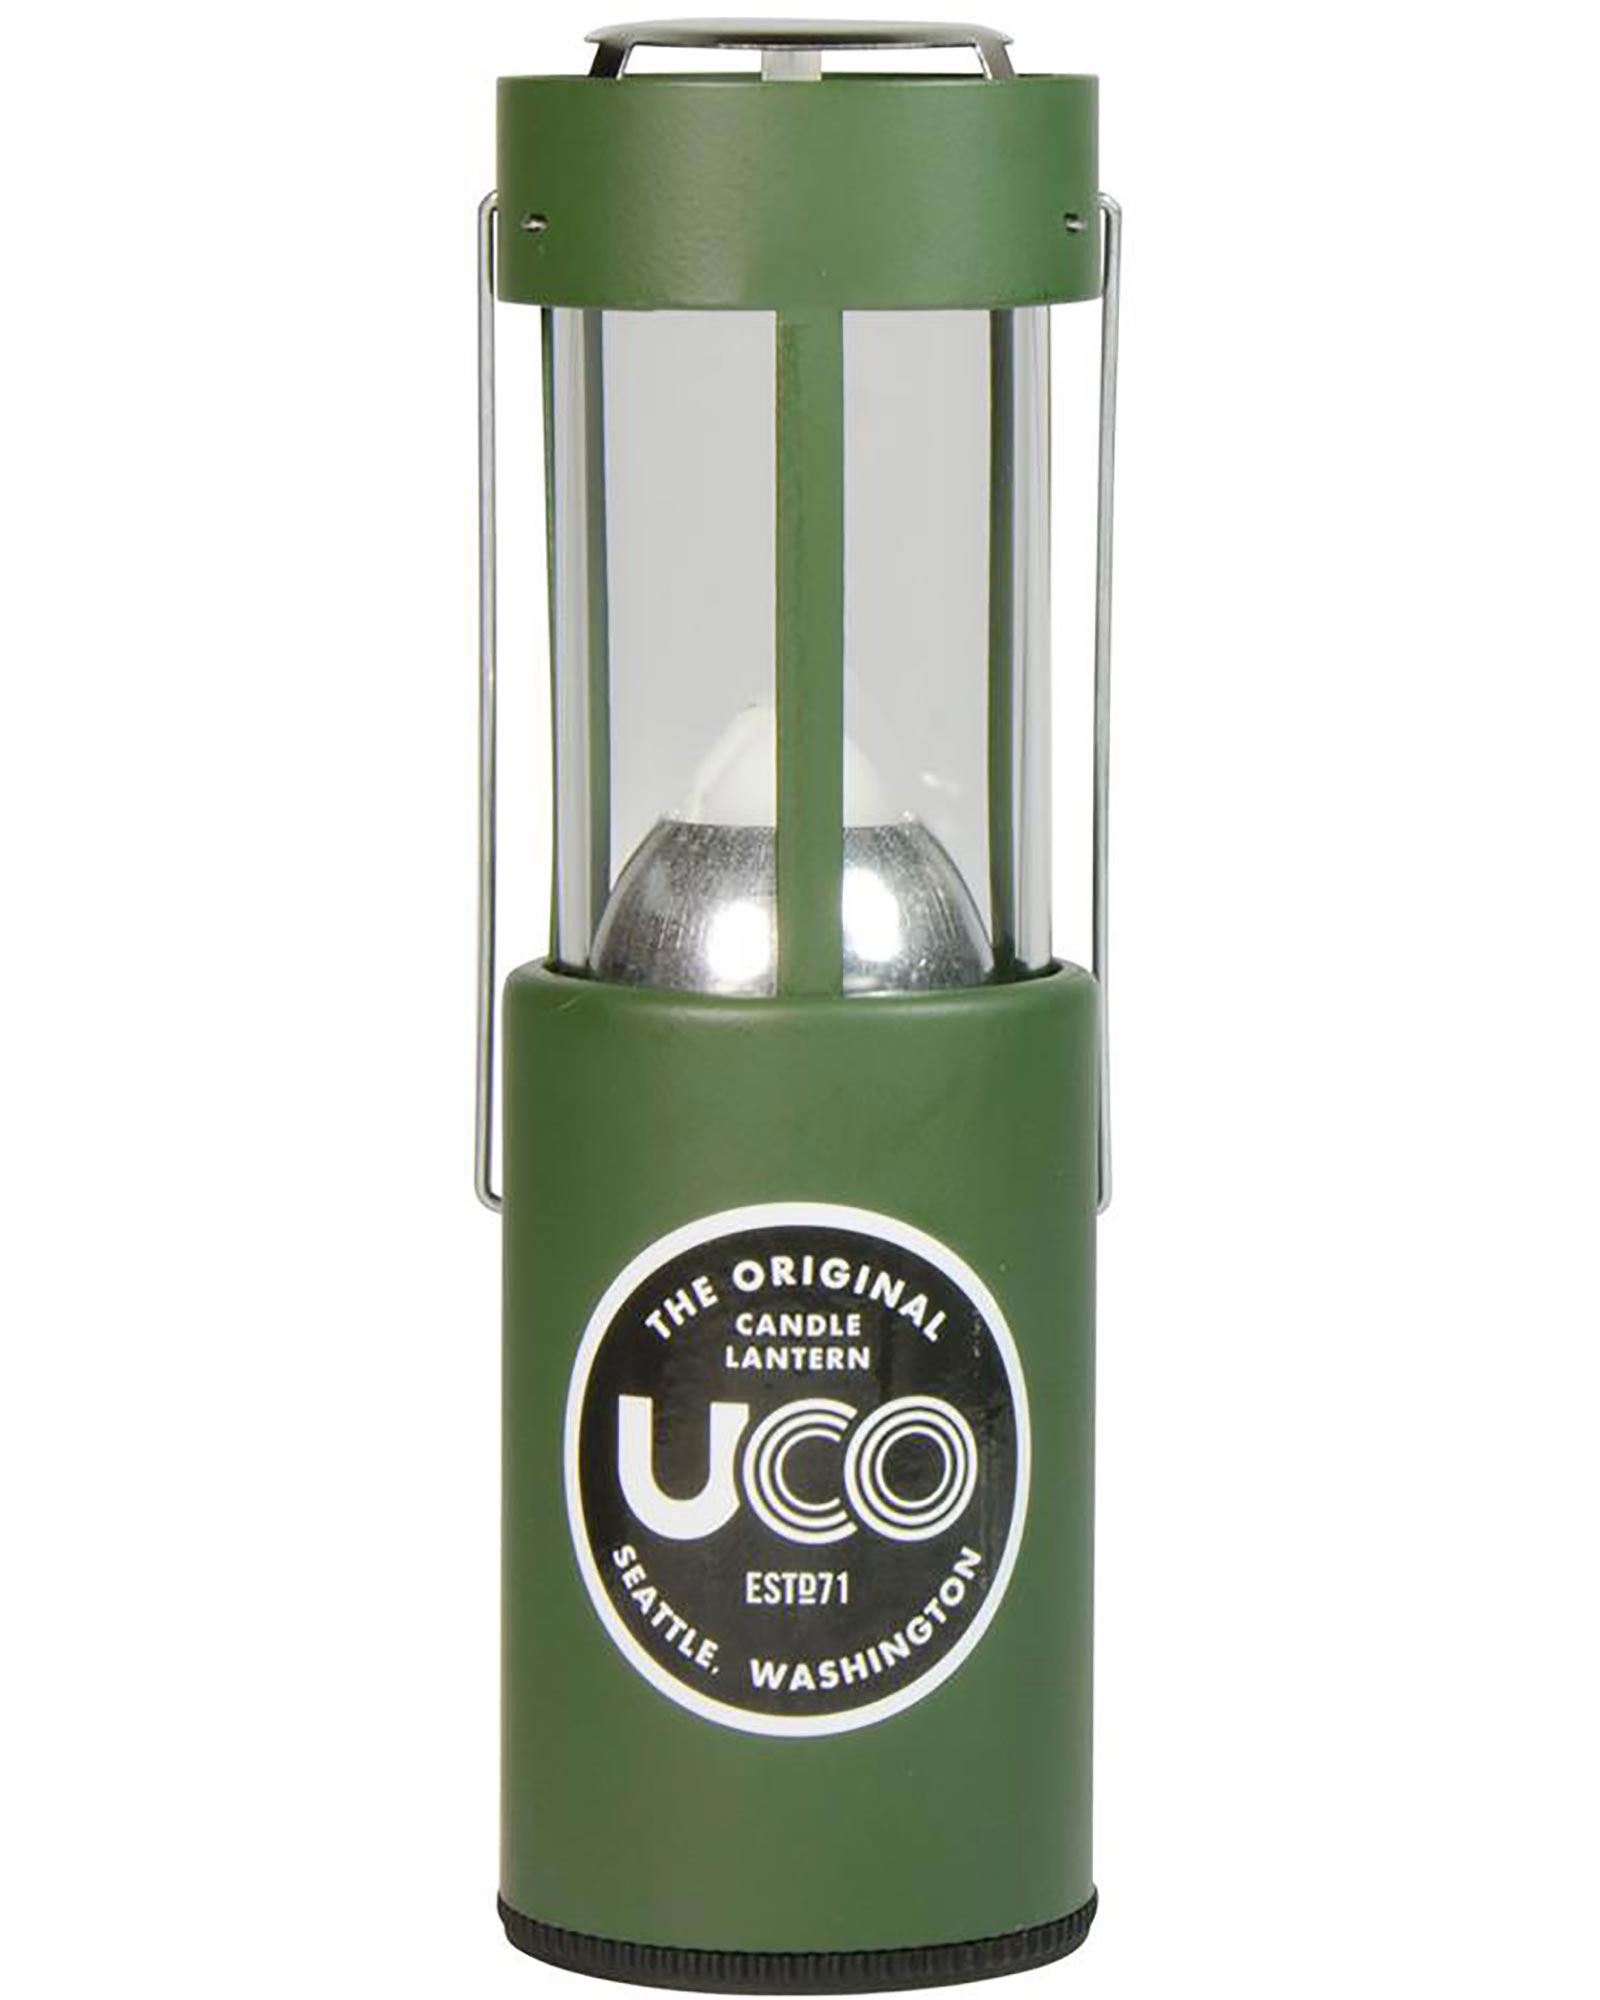 UCO Original Candle Lantern  - Green